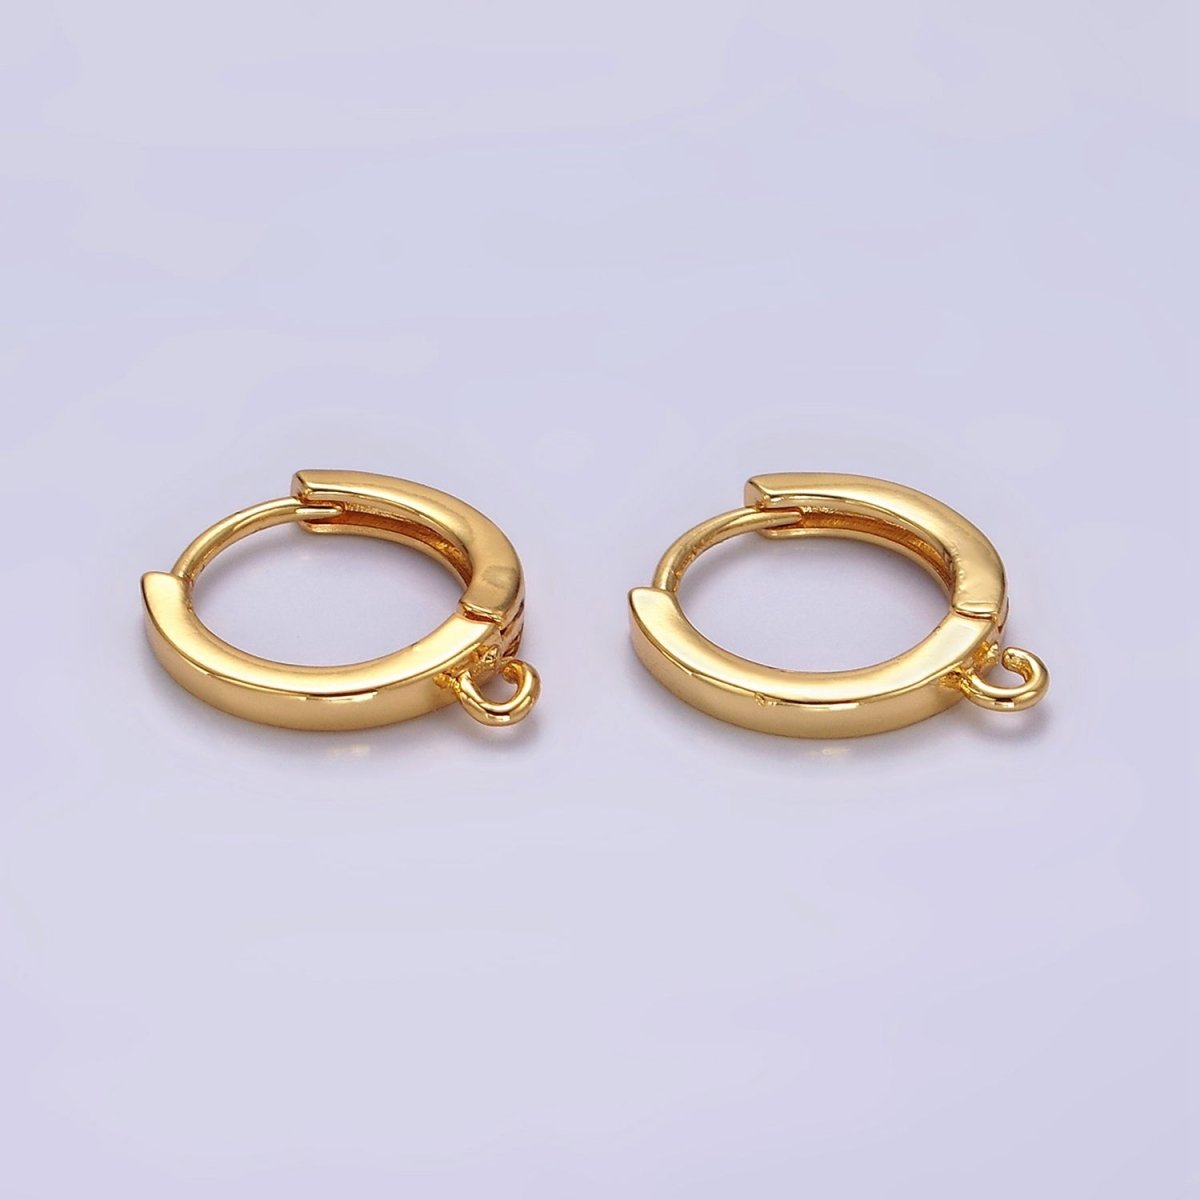 16K Gold Filled 13mm Minimalist Flat Huggie Open Loop Earrings Findings Supply | Z567 - DLUXCA